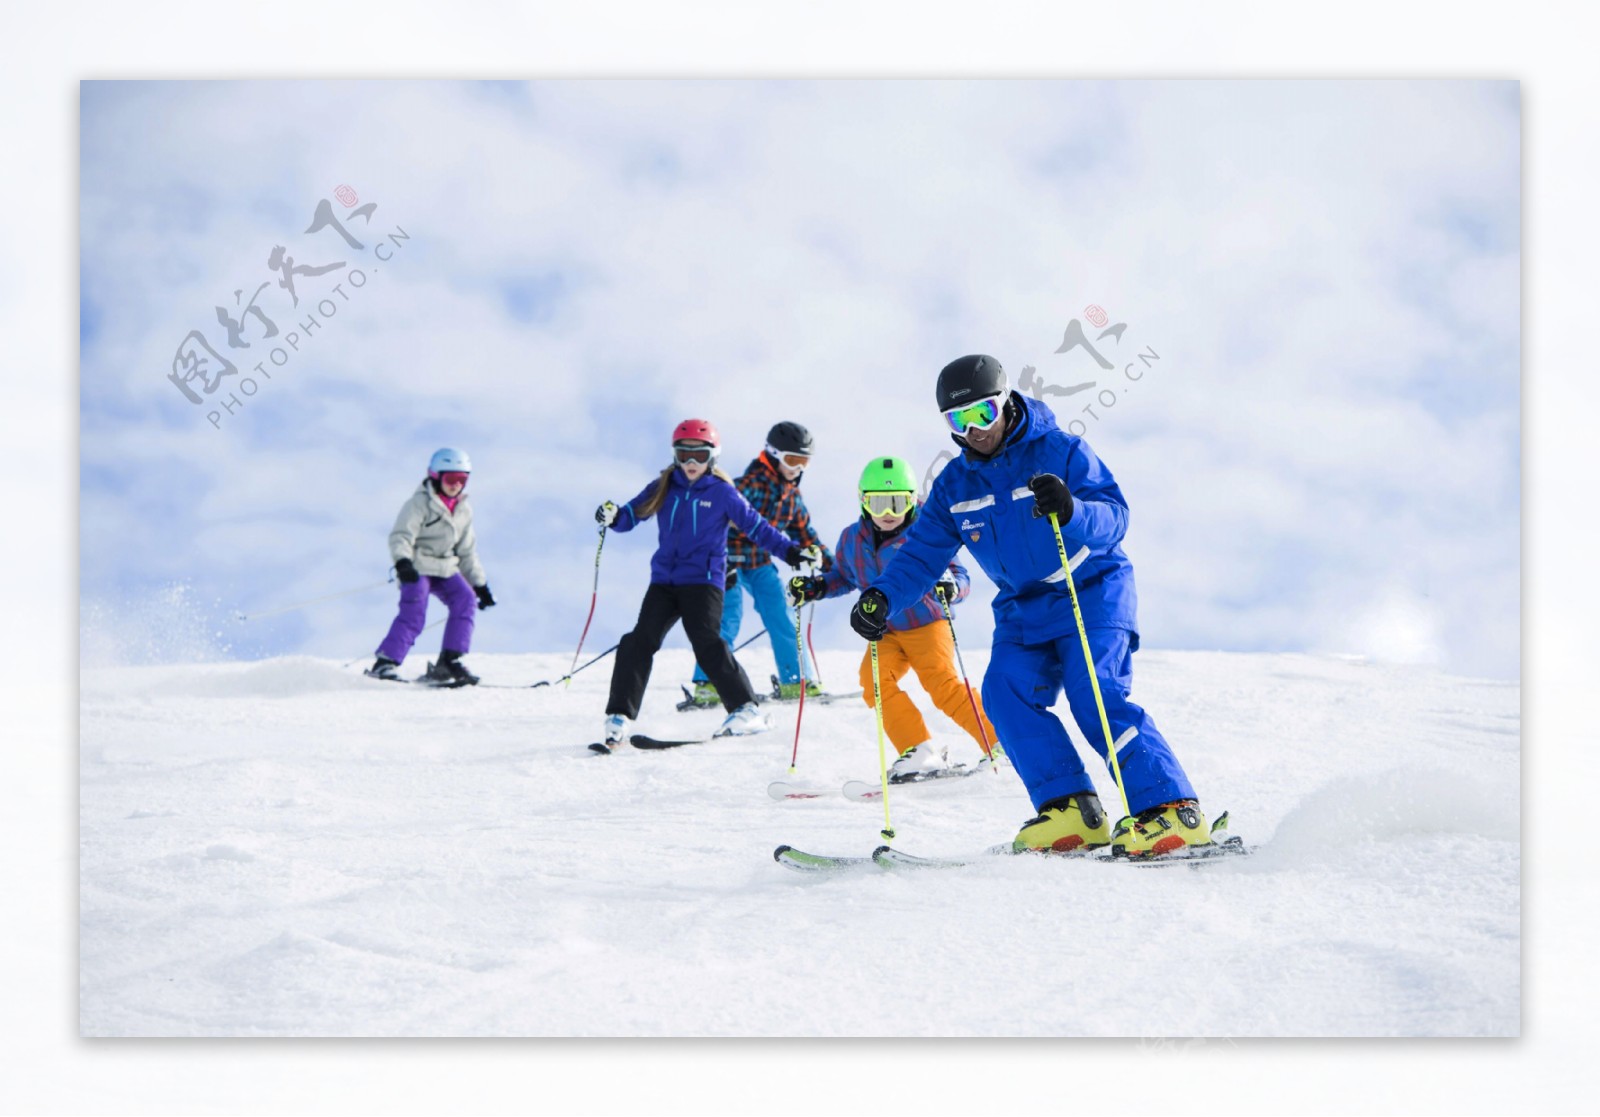 青少年儿童滑雪培训